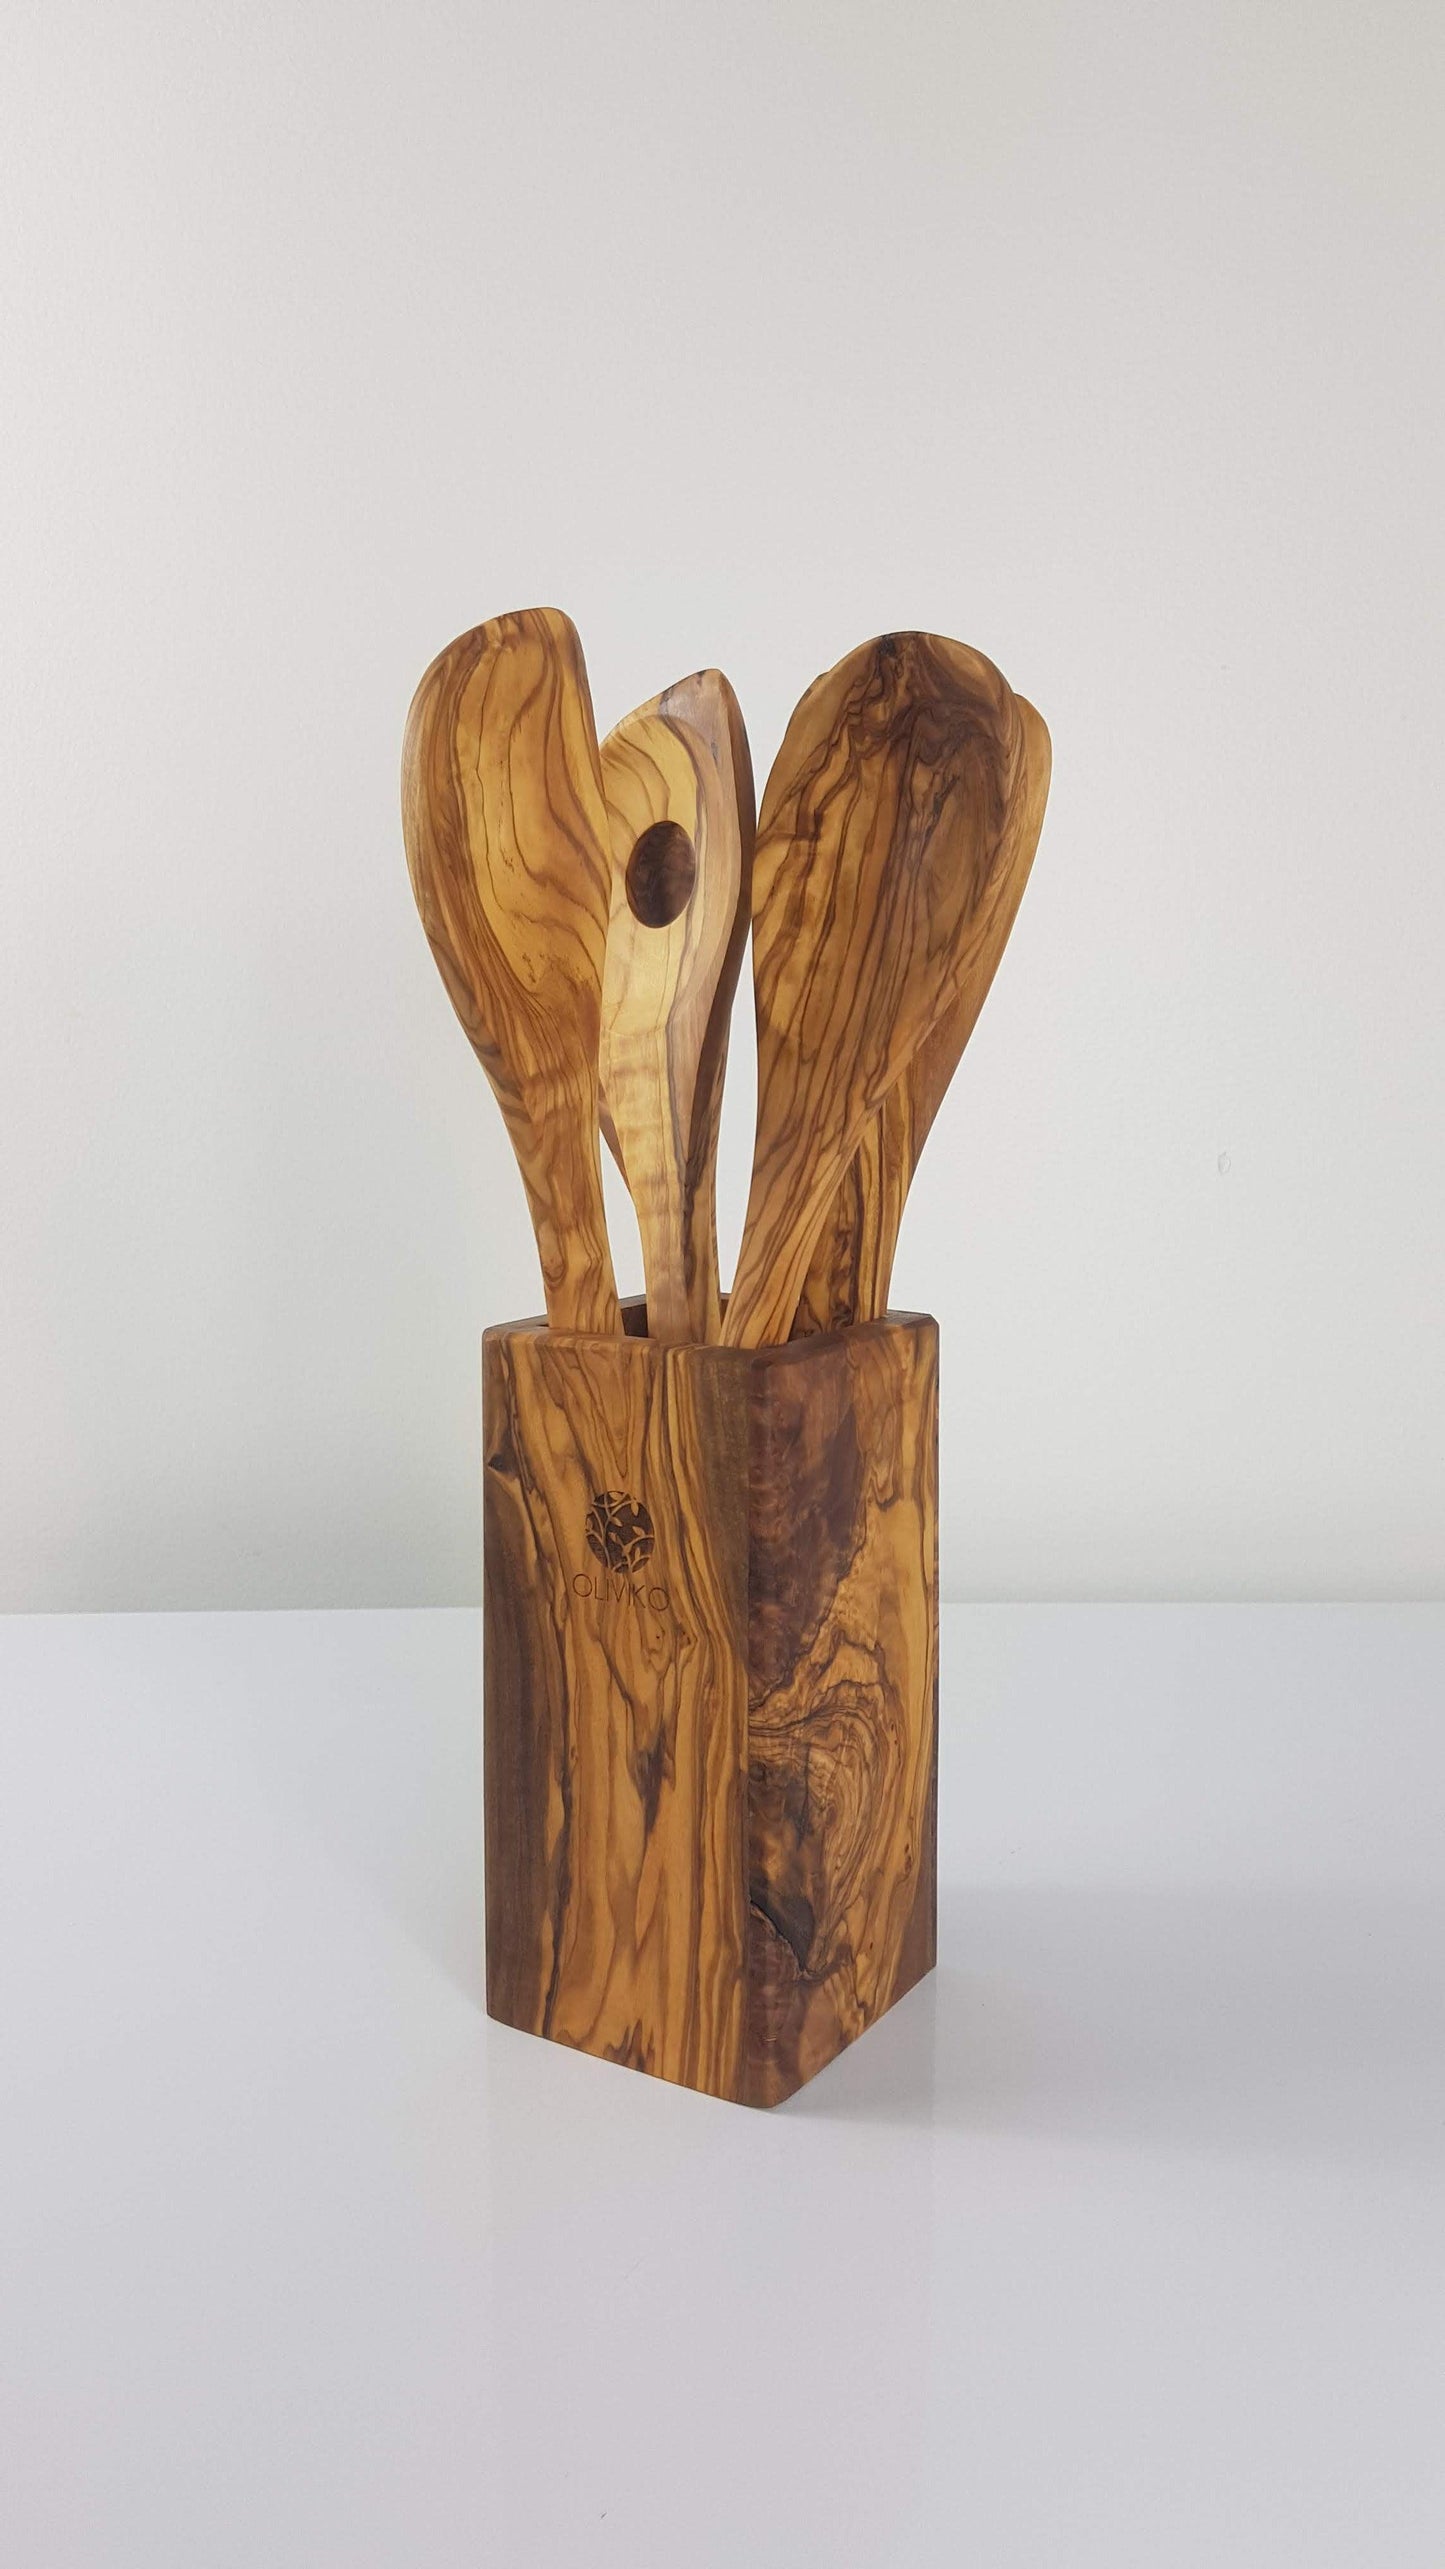 Handmade Olive Wood Holder+ Utensils Kit of 5 Utensils Holder+ 1 Spatula + 4 Spoon 100% Olive Wood